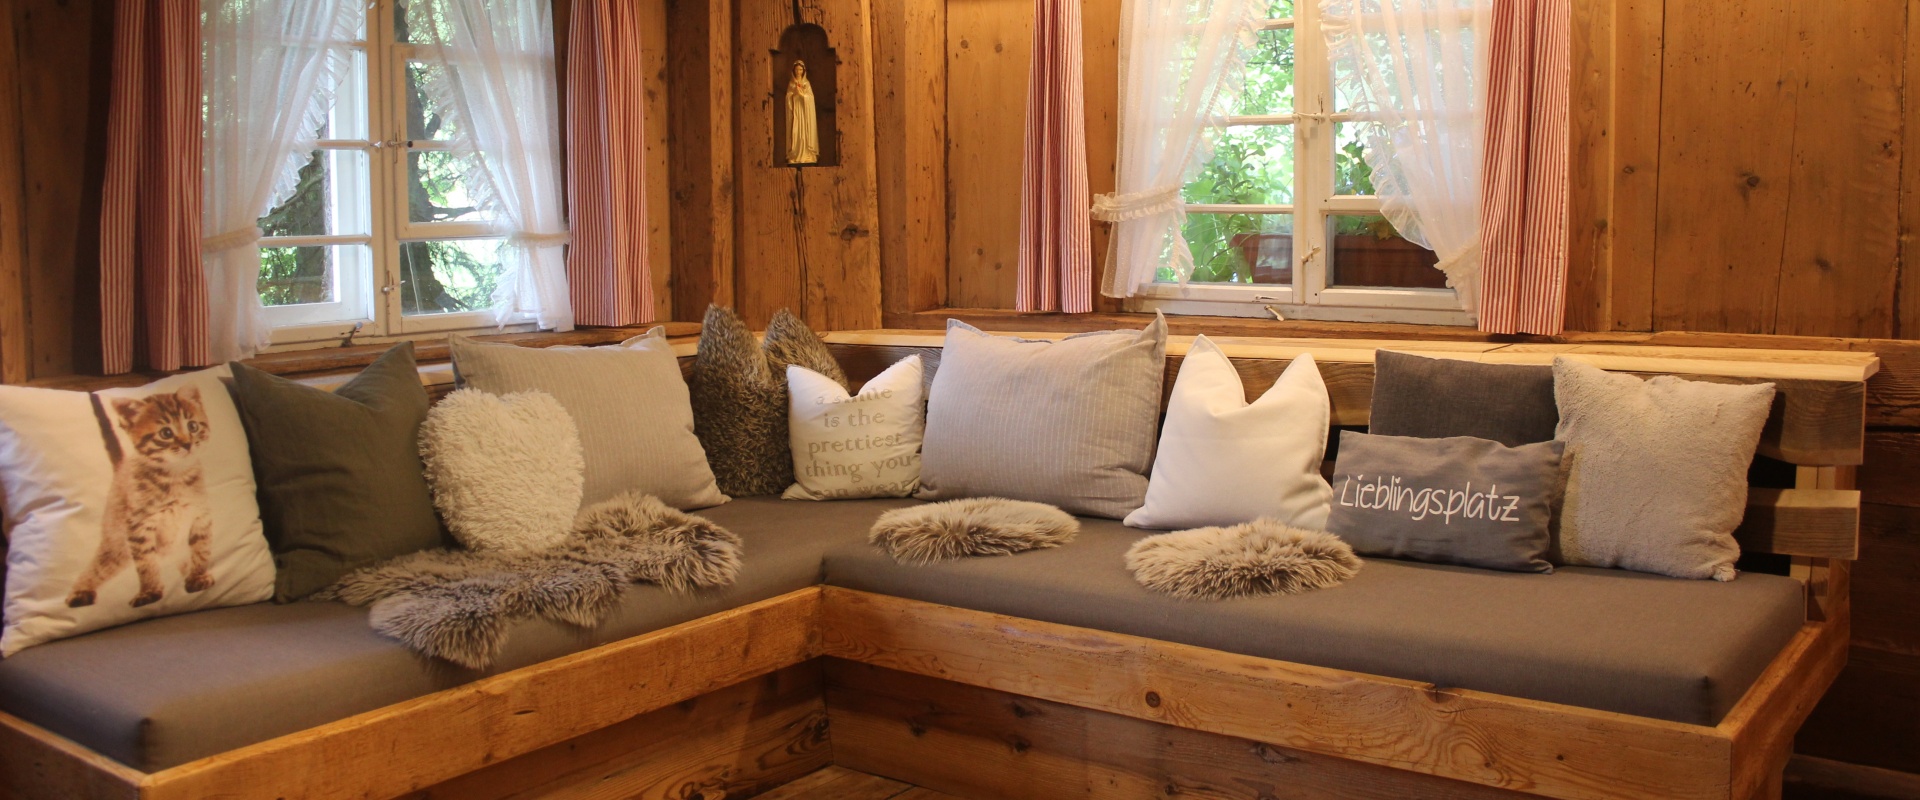 griesbachhof-ferienhaus-wohnzimmer-couch-neu